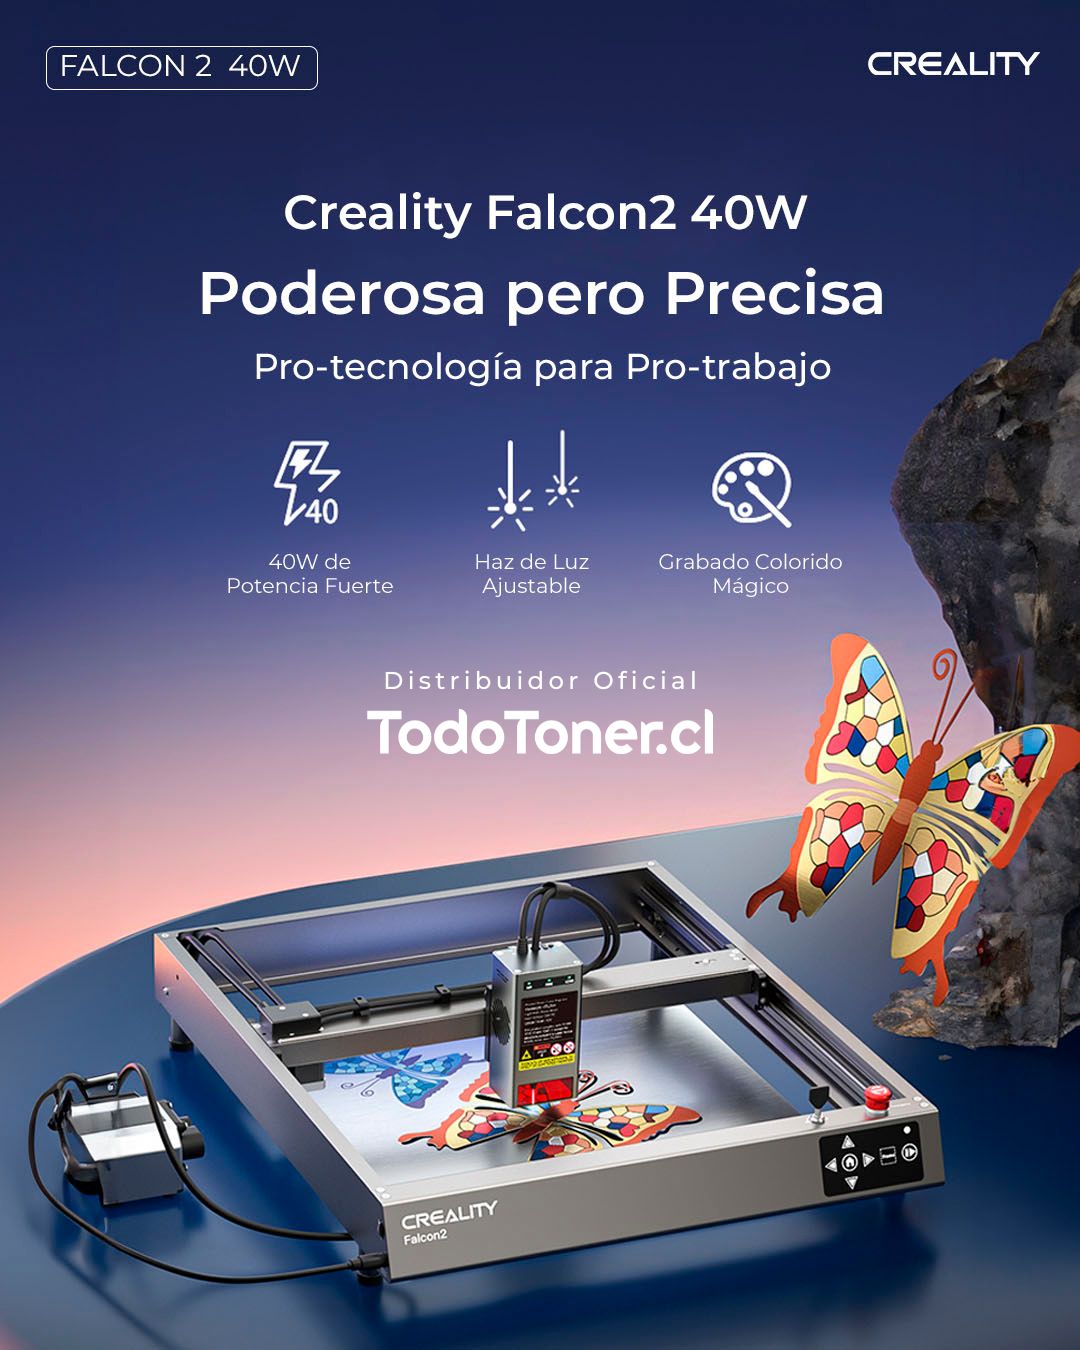 Creality Falcon2 40W - Creality 3D